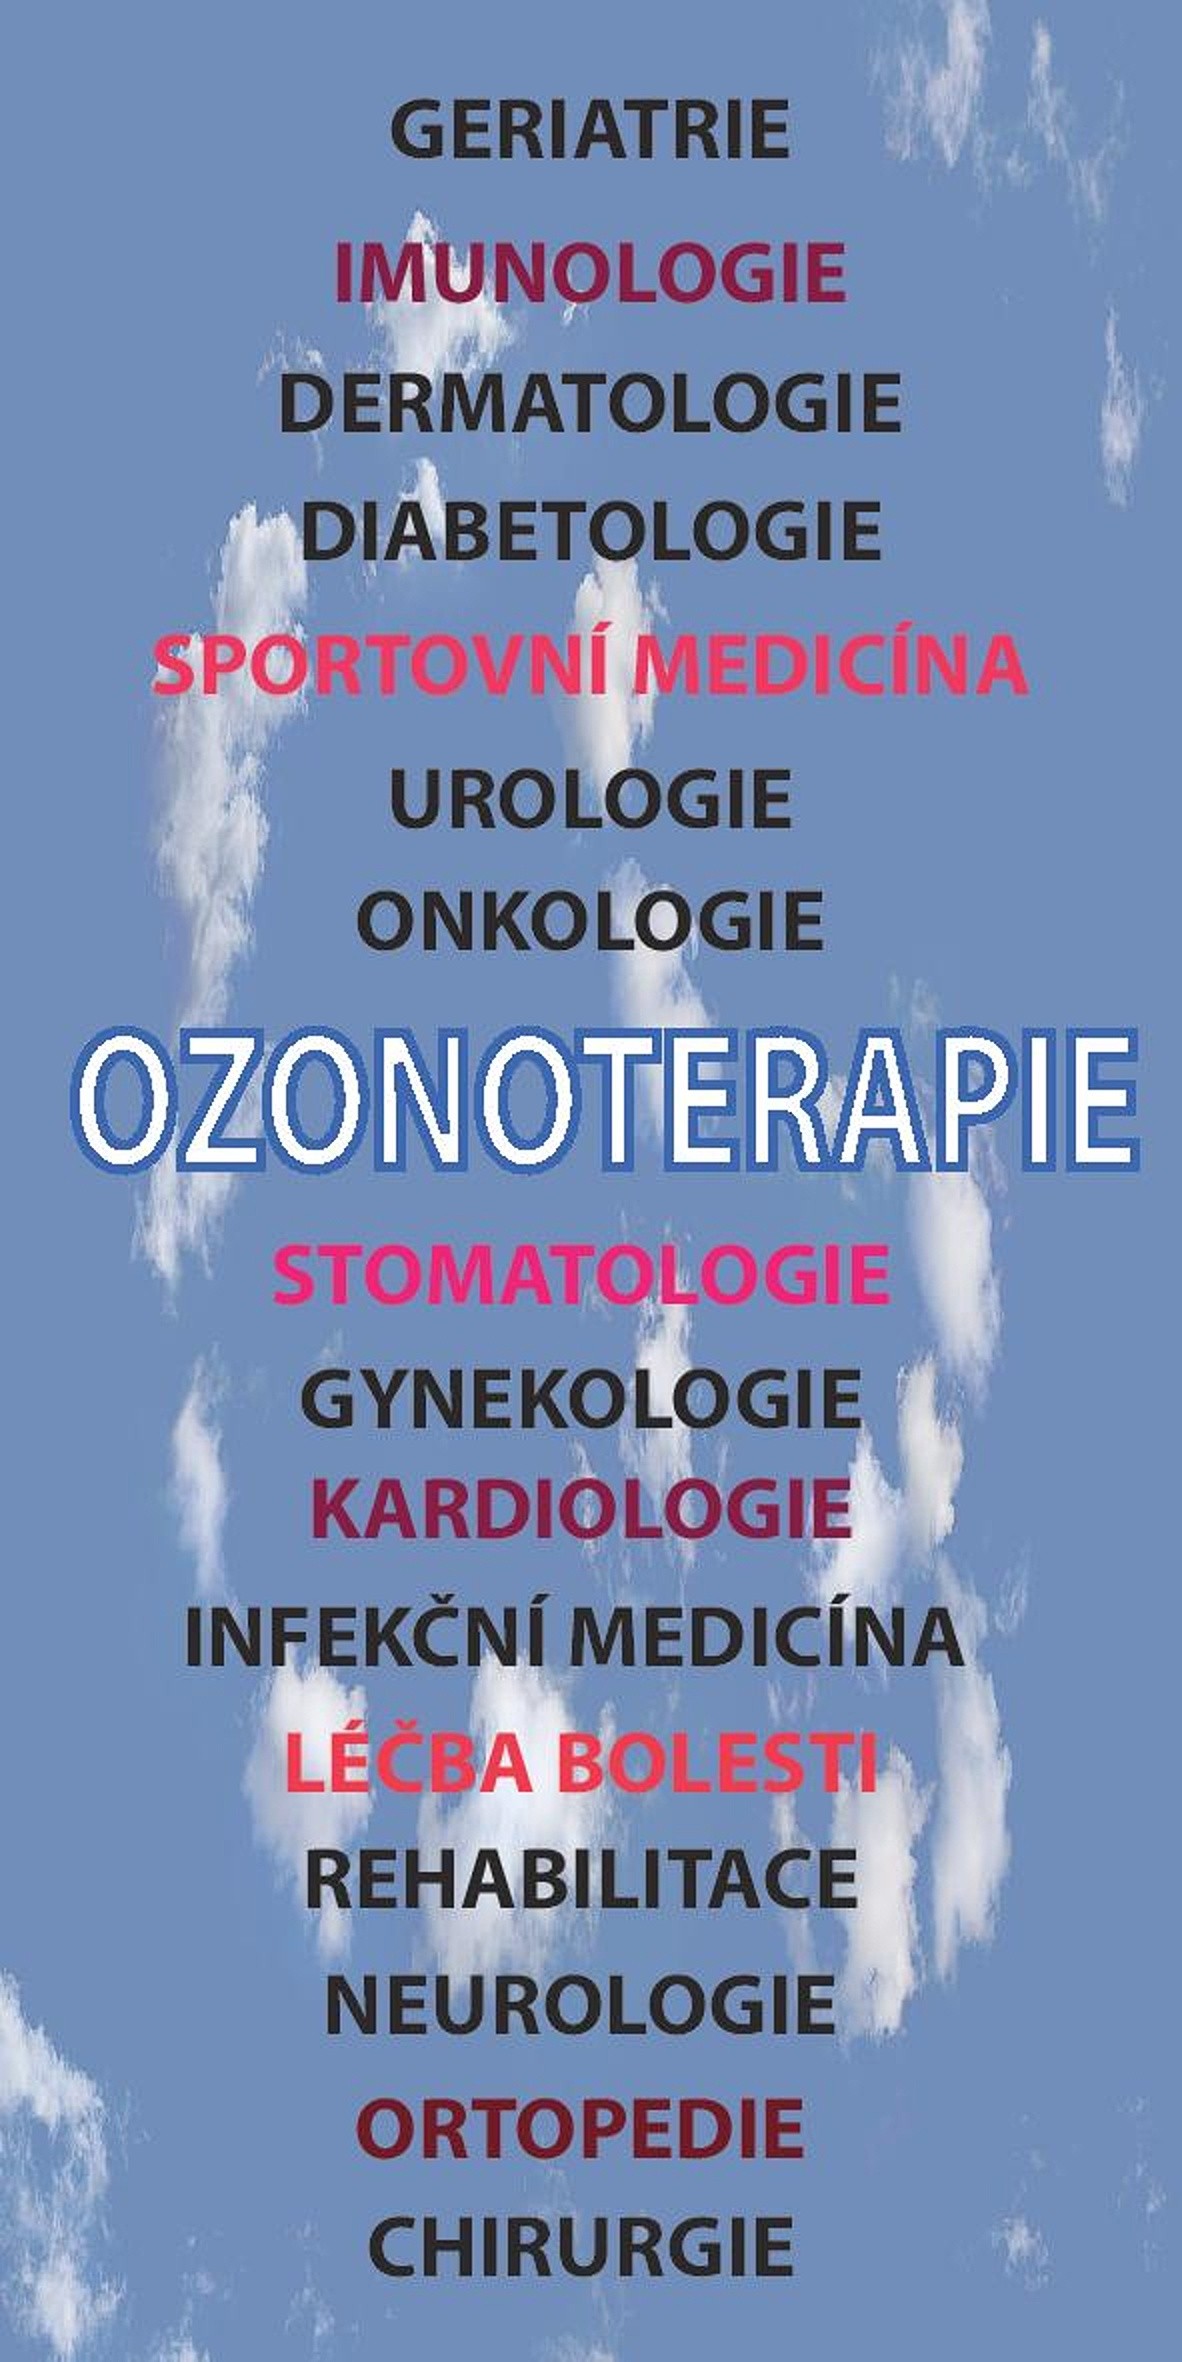 ozonoterapie-page-001.jpg